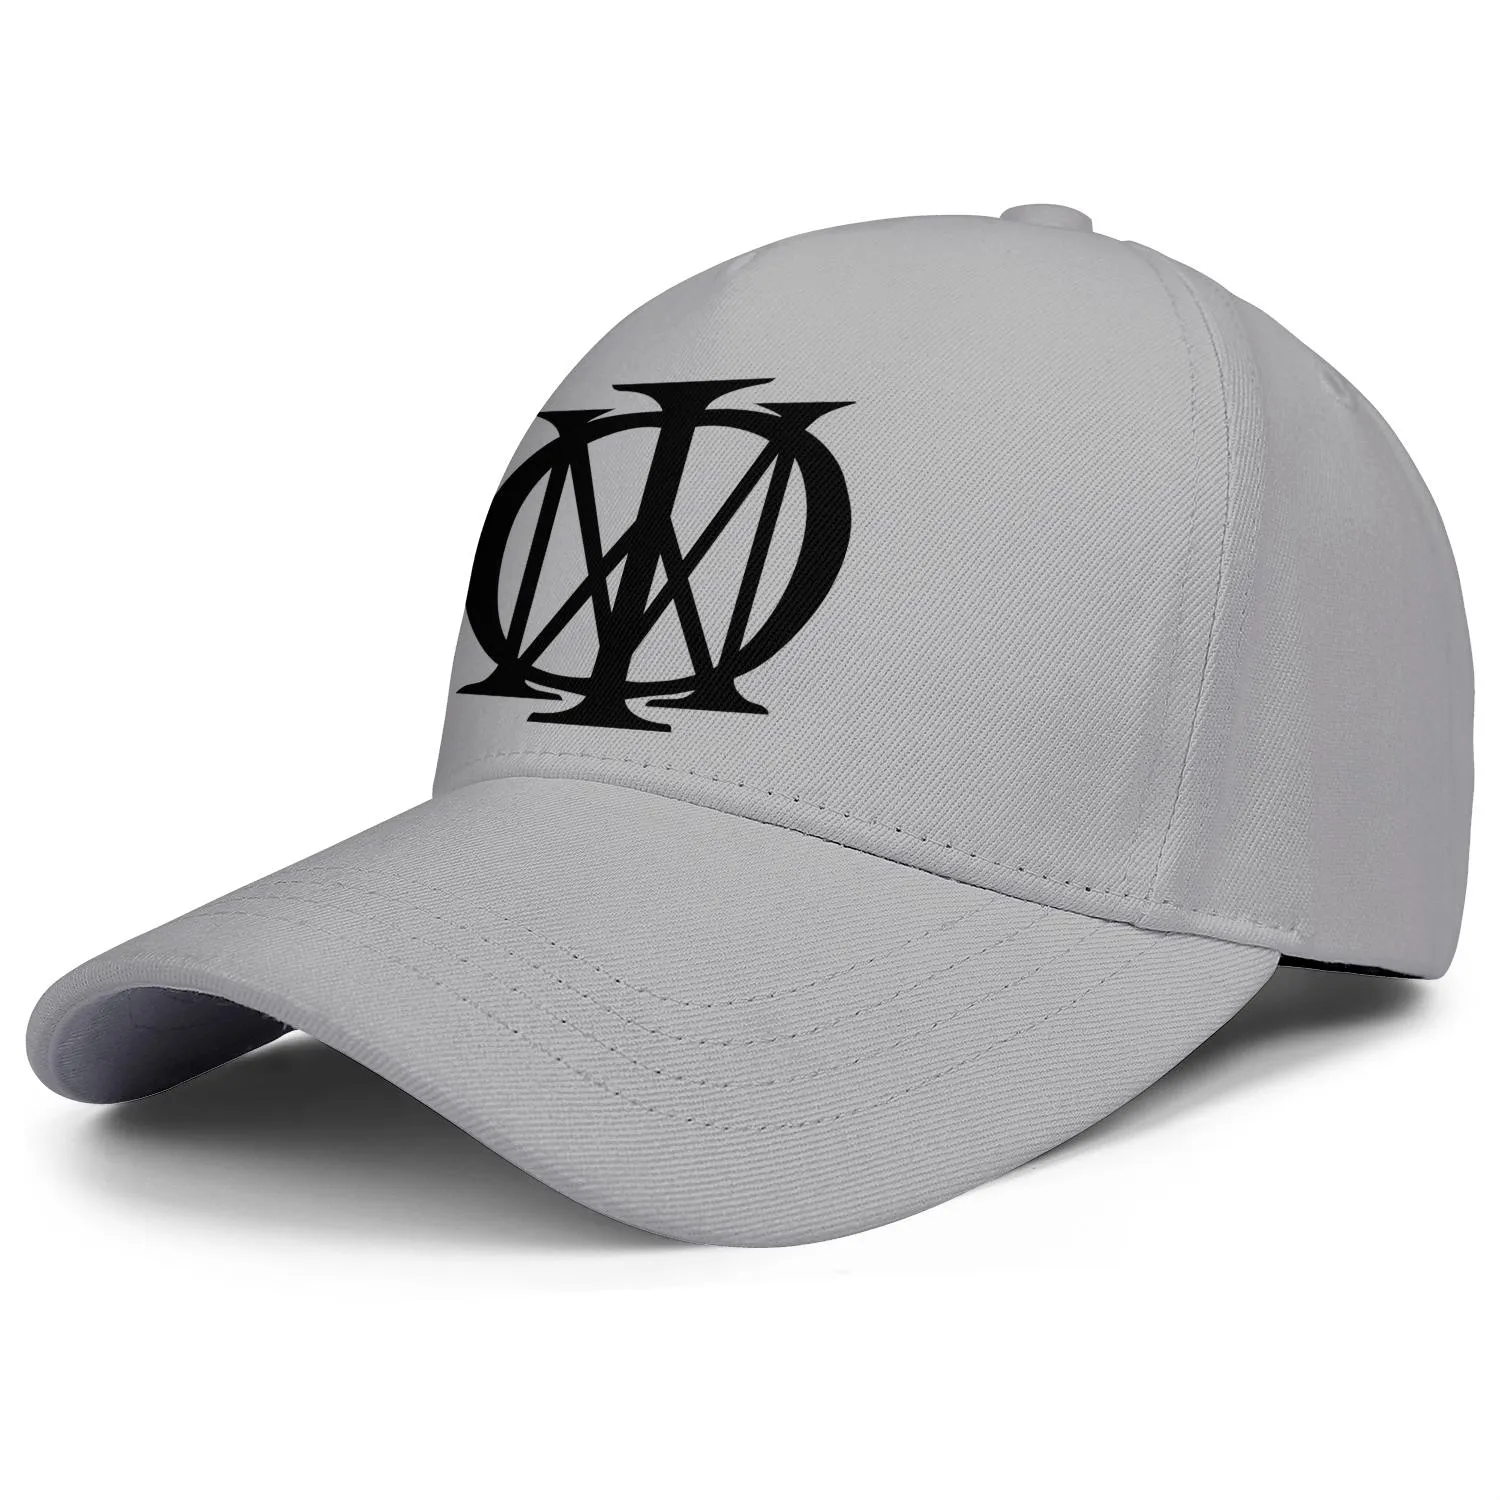 ファッションドリームシアターのロゴユニセックス野球帽フィットスタイリッシュなトラックハットドリームシアタープログレッシブロックミュージッククラシックシンボル477003017205